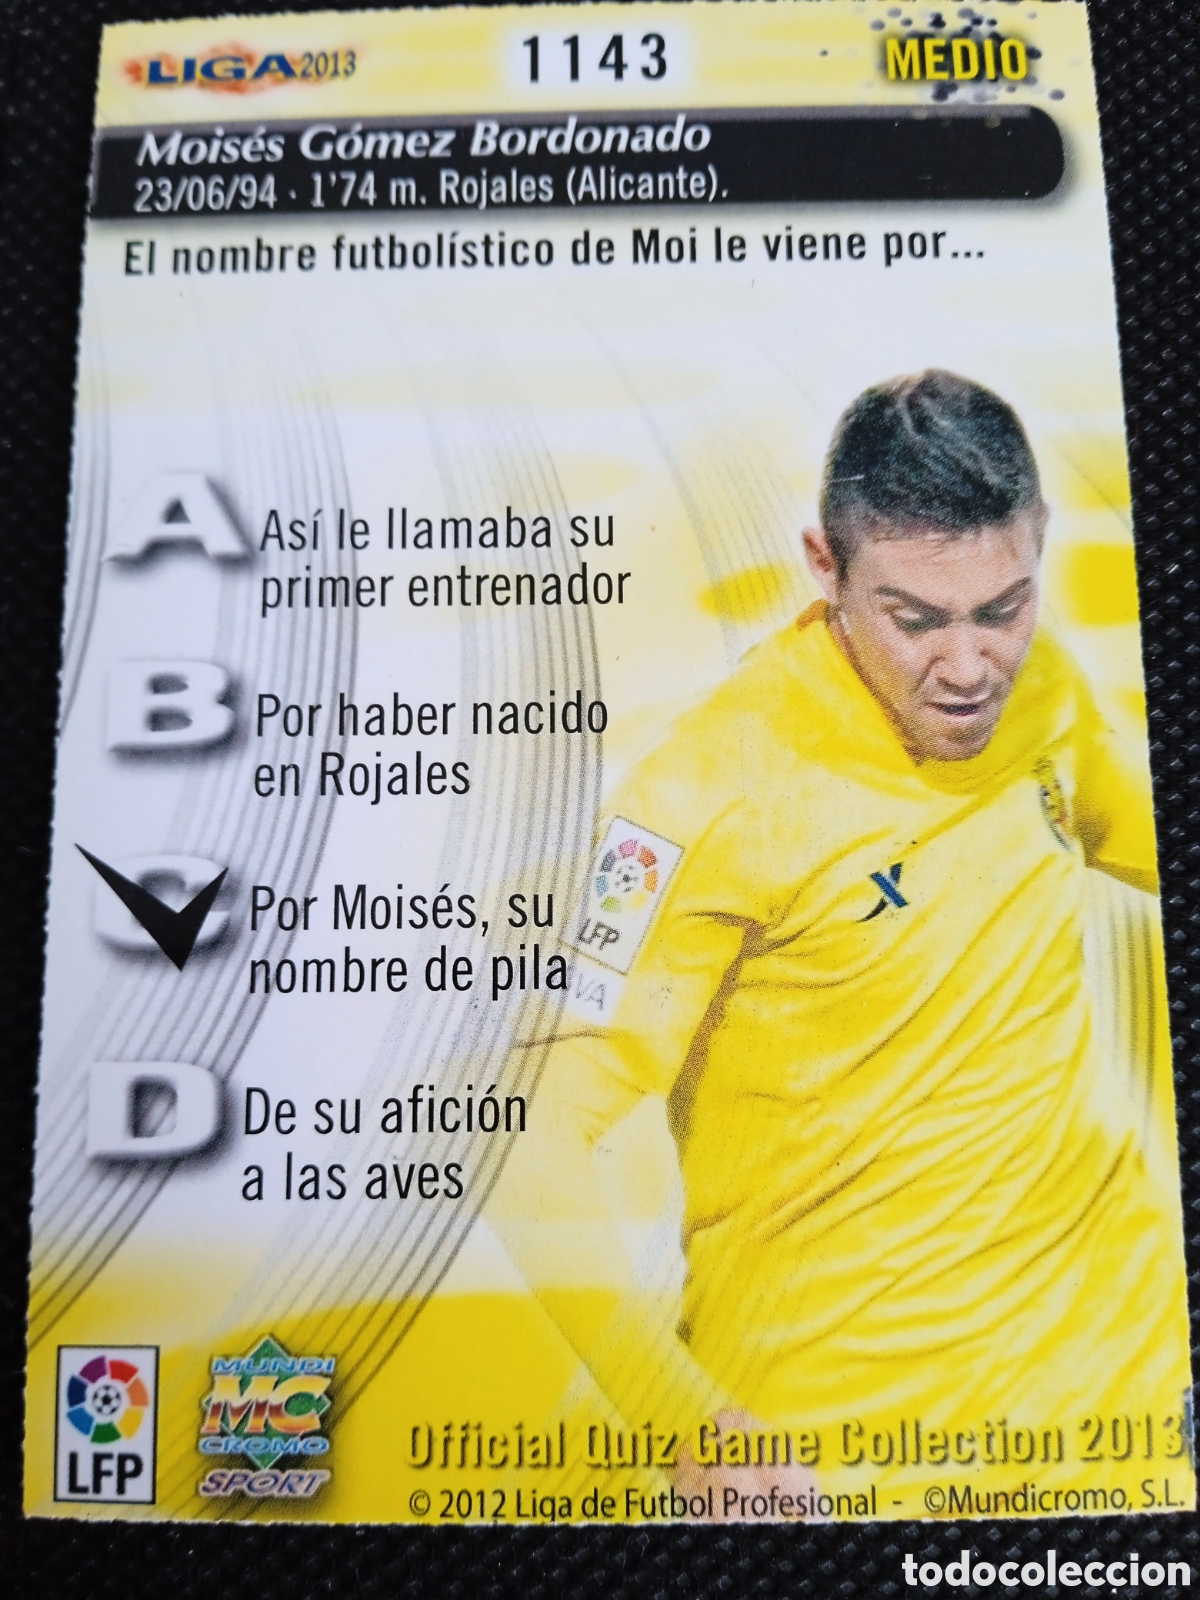 Vinilo de fútbol personalizado carta jugador roja - Rotula2 Empresa de  rotulación y marketing en Madrid